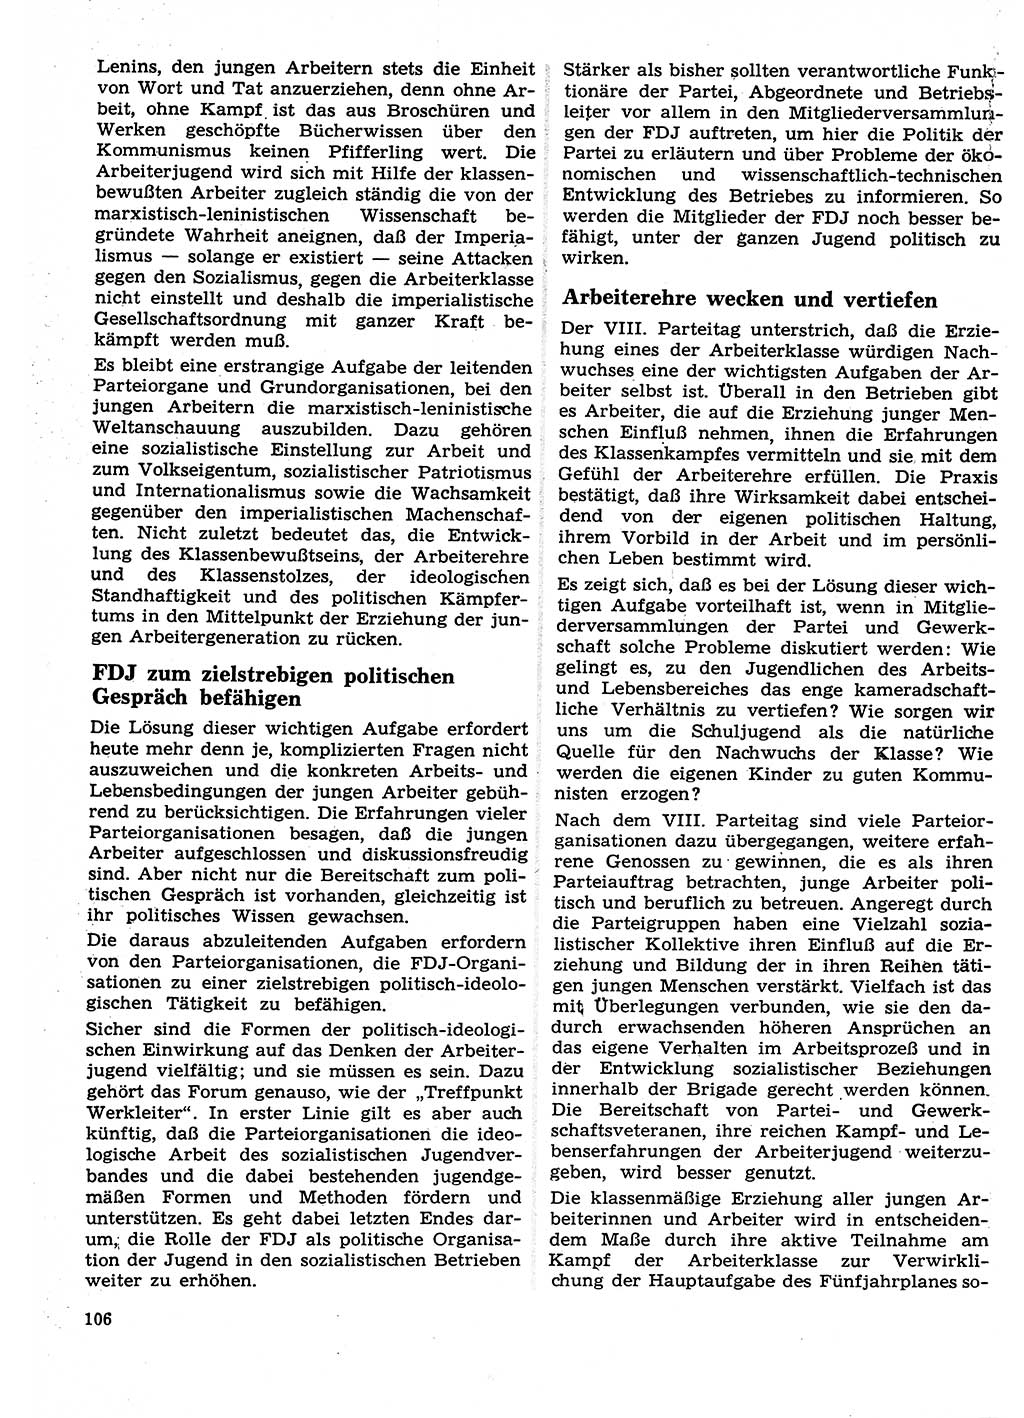 Neuer Weg (NW), Organ des Zentralkomitees (ZK) der SED (Sozialistische Einheitspartei Deutschlands) für Fragen des Parteilebens, 27. Jahrgang [Deutsche Demokratische Republik (DDR)] 1972, Seite 106 (NW ZK SED DDR 1972, S. 106)